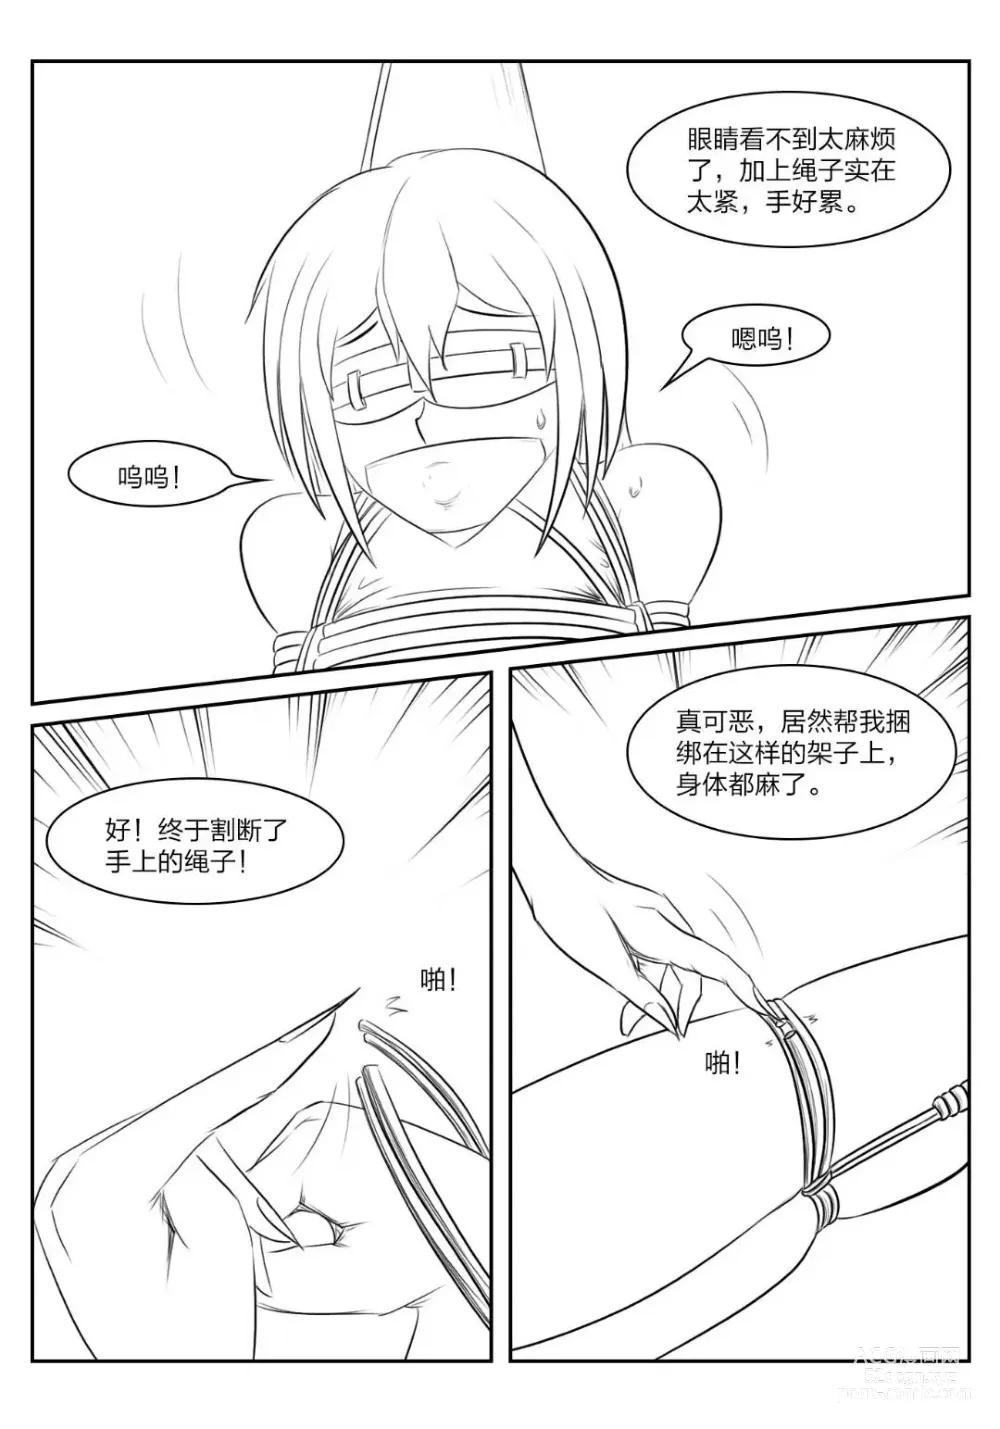 Page 10 of doujinshi 《被困游戏世界》